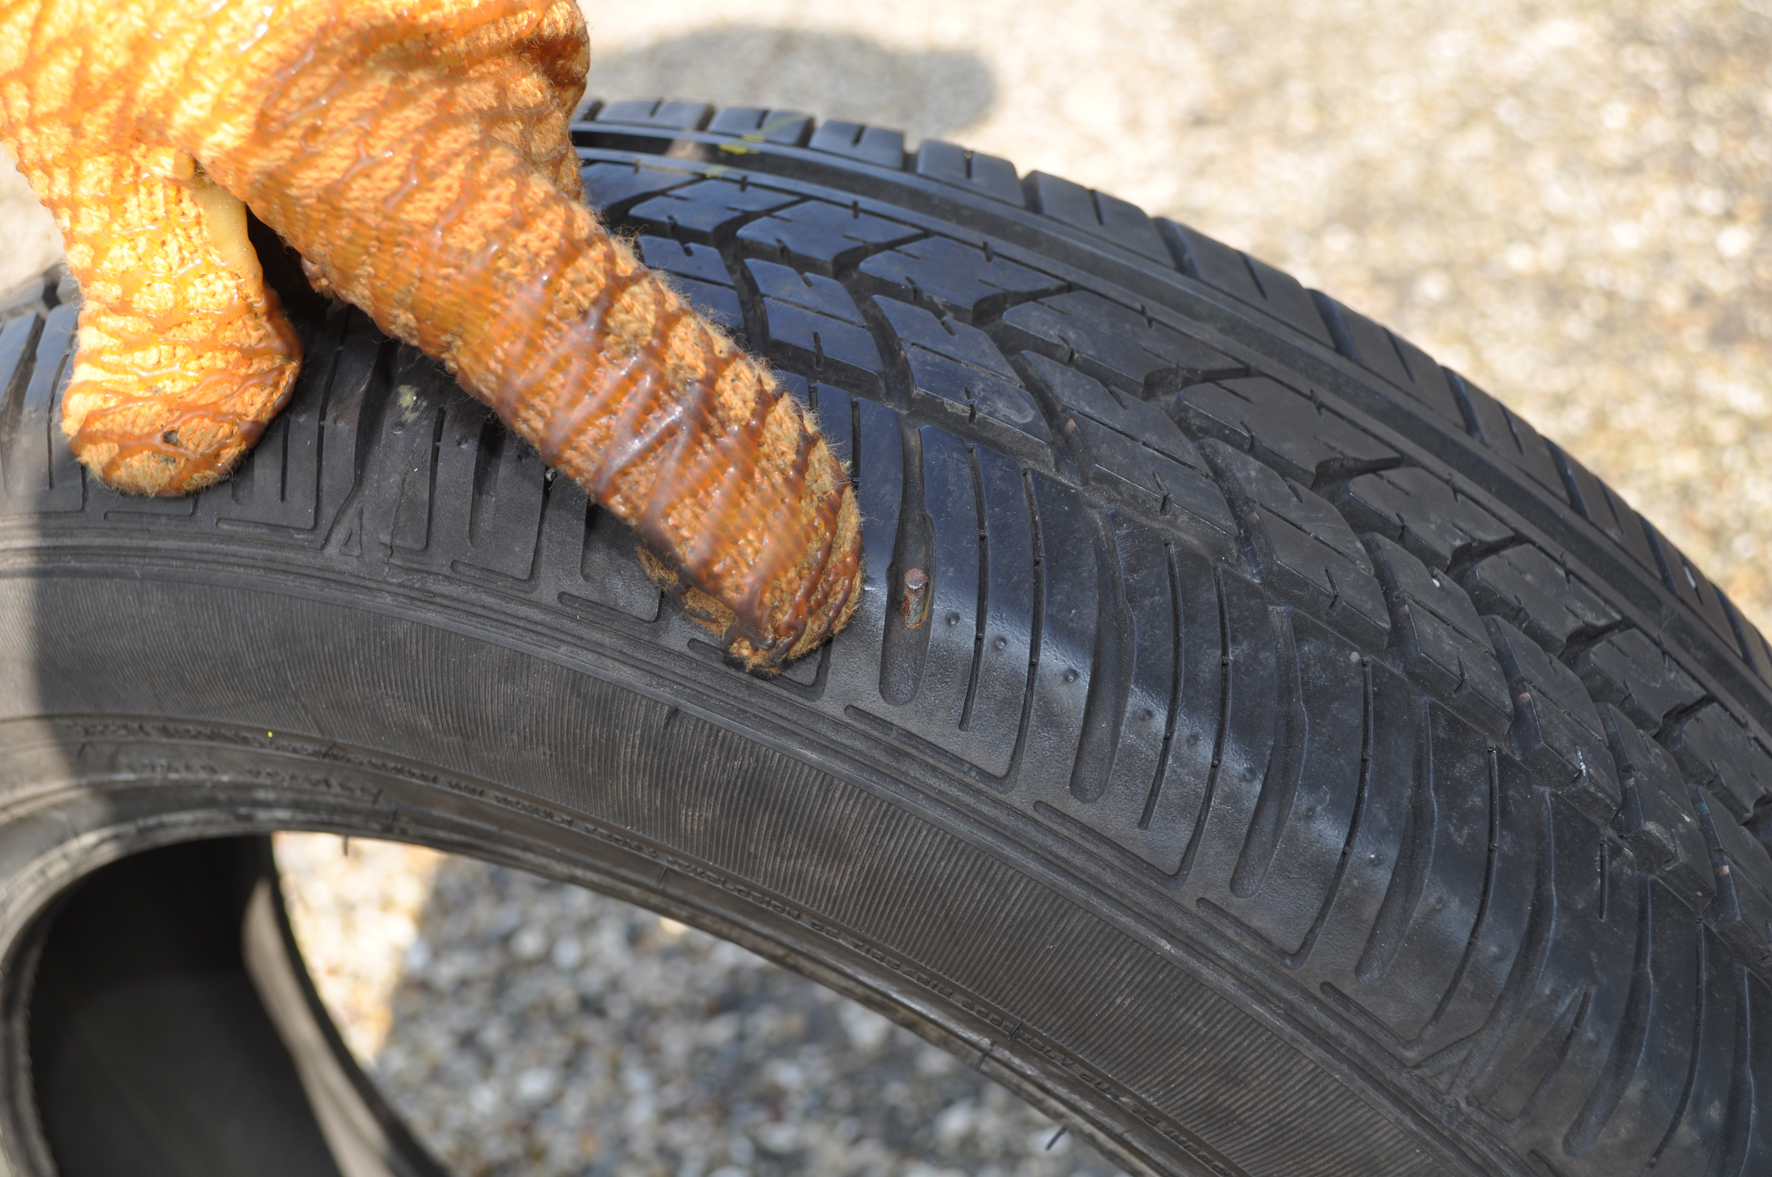 Repairing tyres